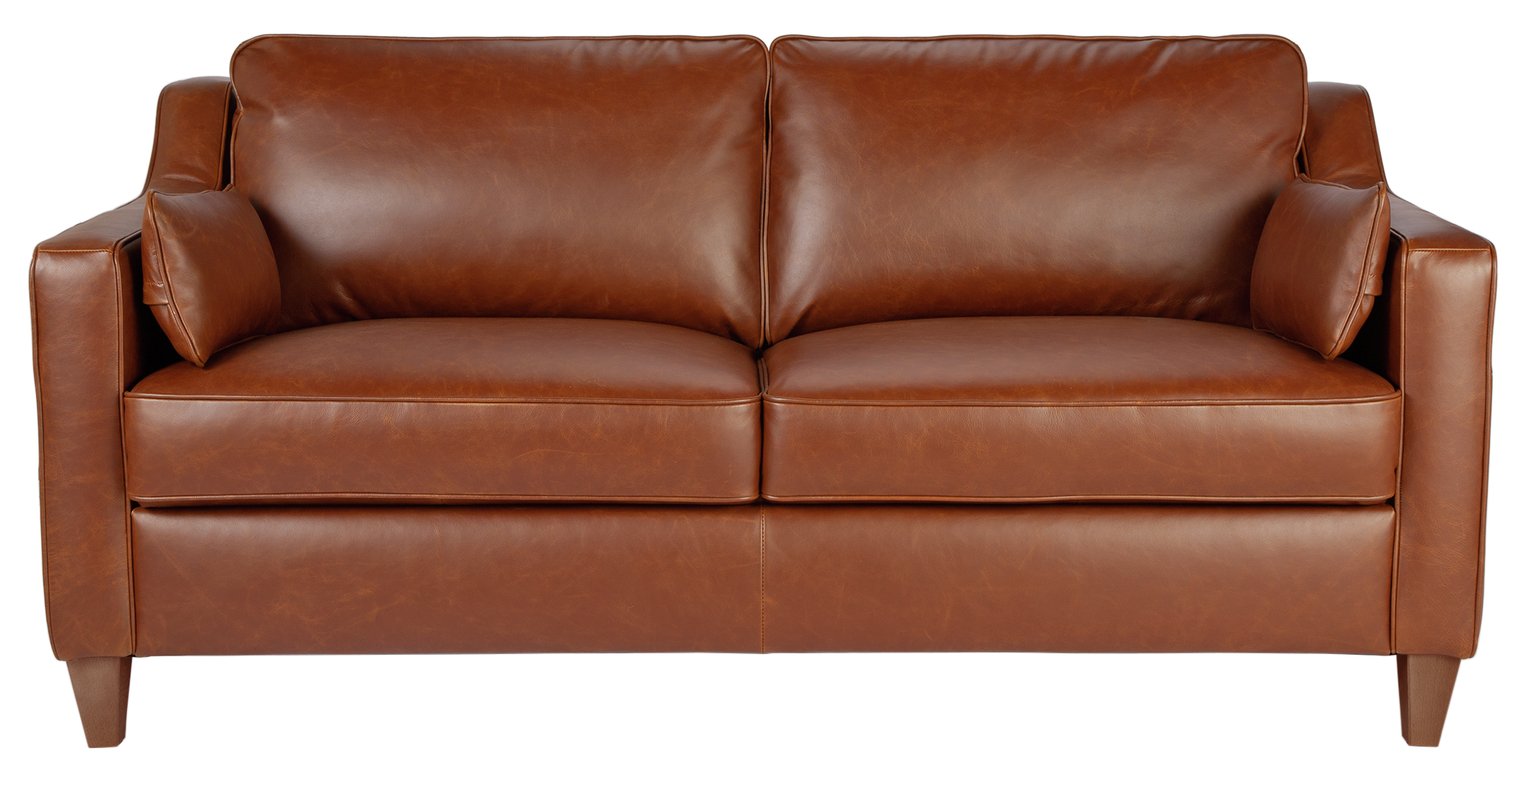 Argos Home Drury Lane 3 Seater Leather Sofa review